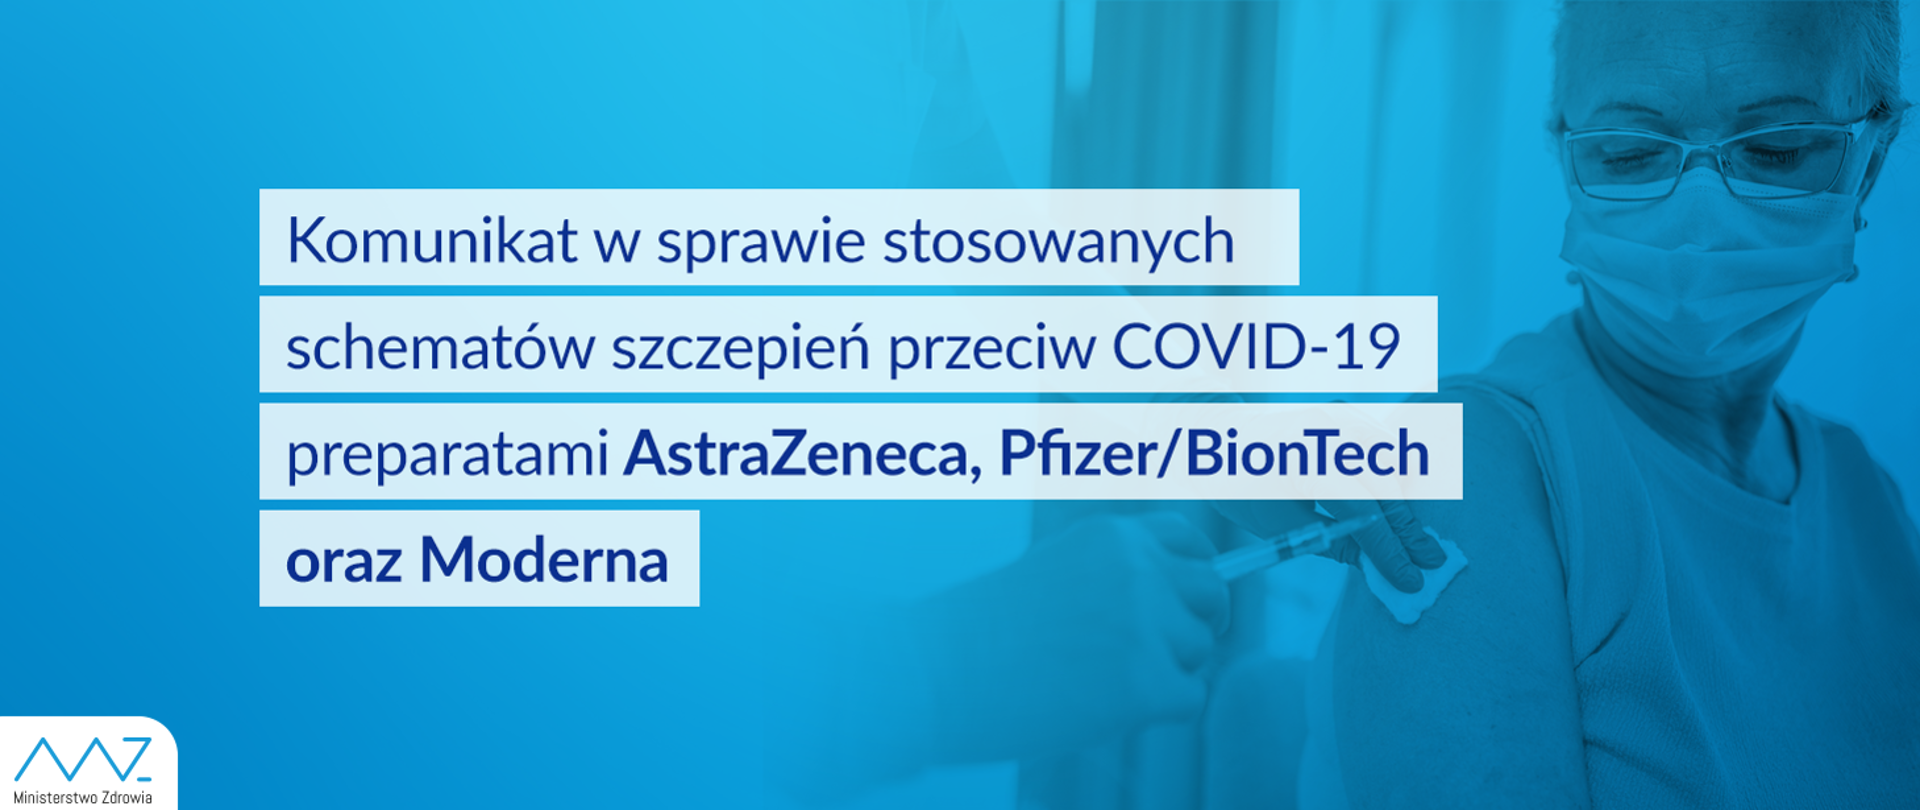 Baner z tekstem - Komunikat nr 7 Ministra Zdrowia w sprawie stosowanych schematów szczepień przeciw COVID-19 preparatami AstraZeneca, Pfizer/BionTech oraz Moderna, na zdjęciu szczepiąca się kobieta